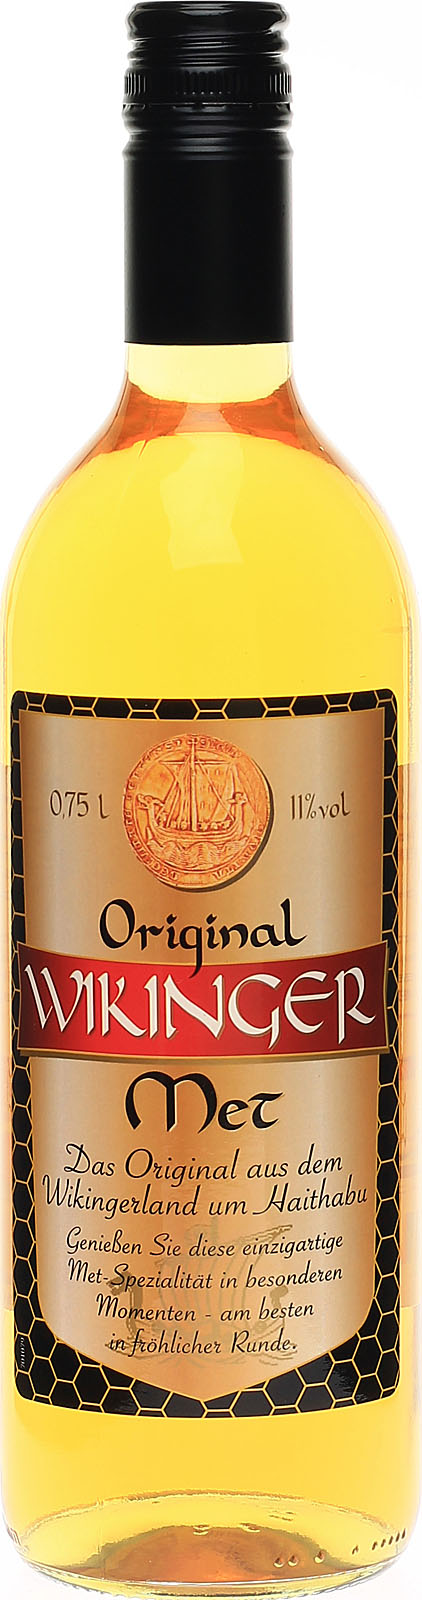 Original, Wikinger Met überl Honigwein, köstlicher nach